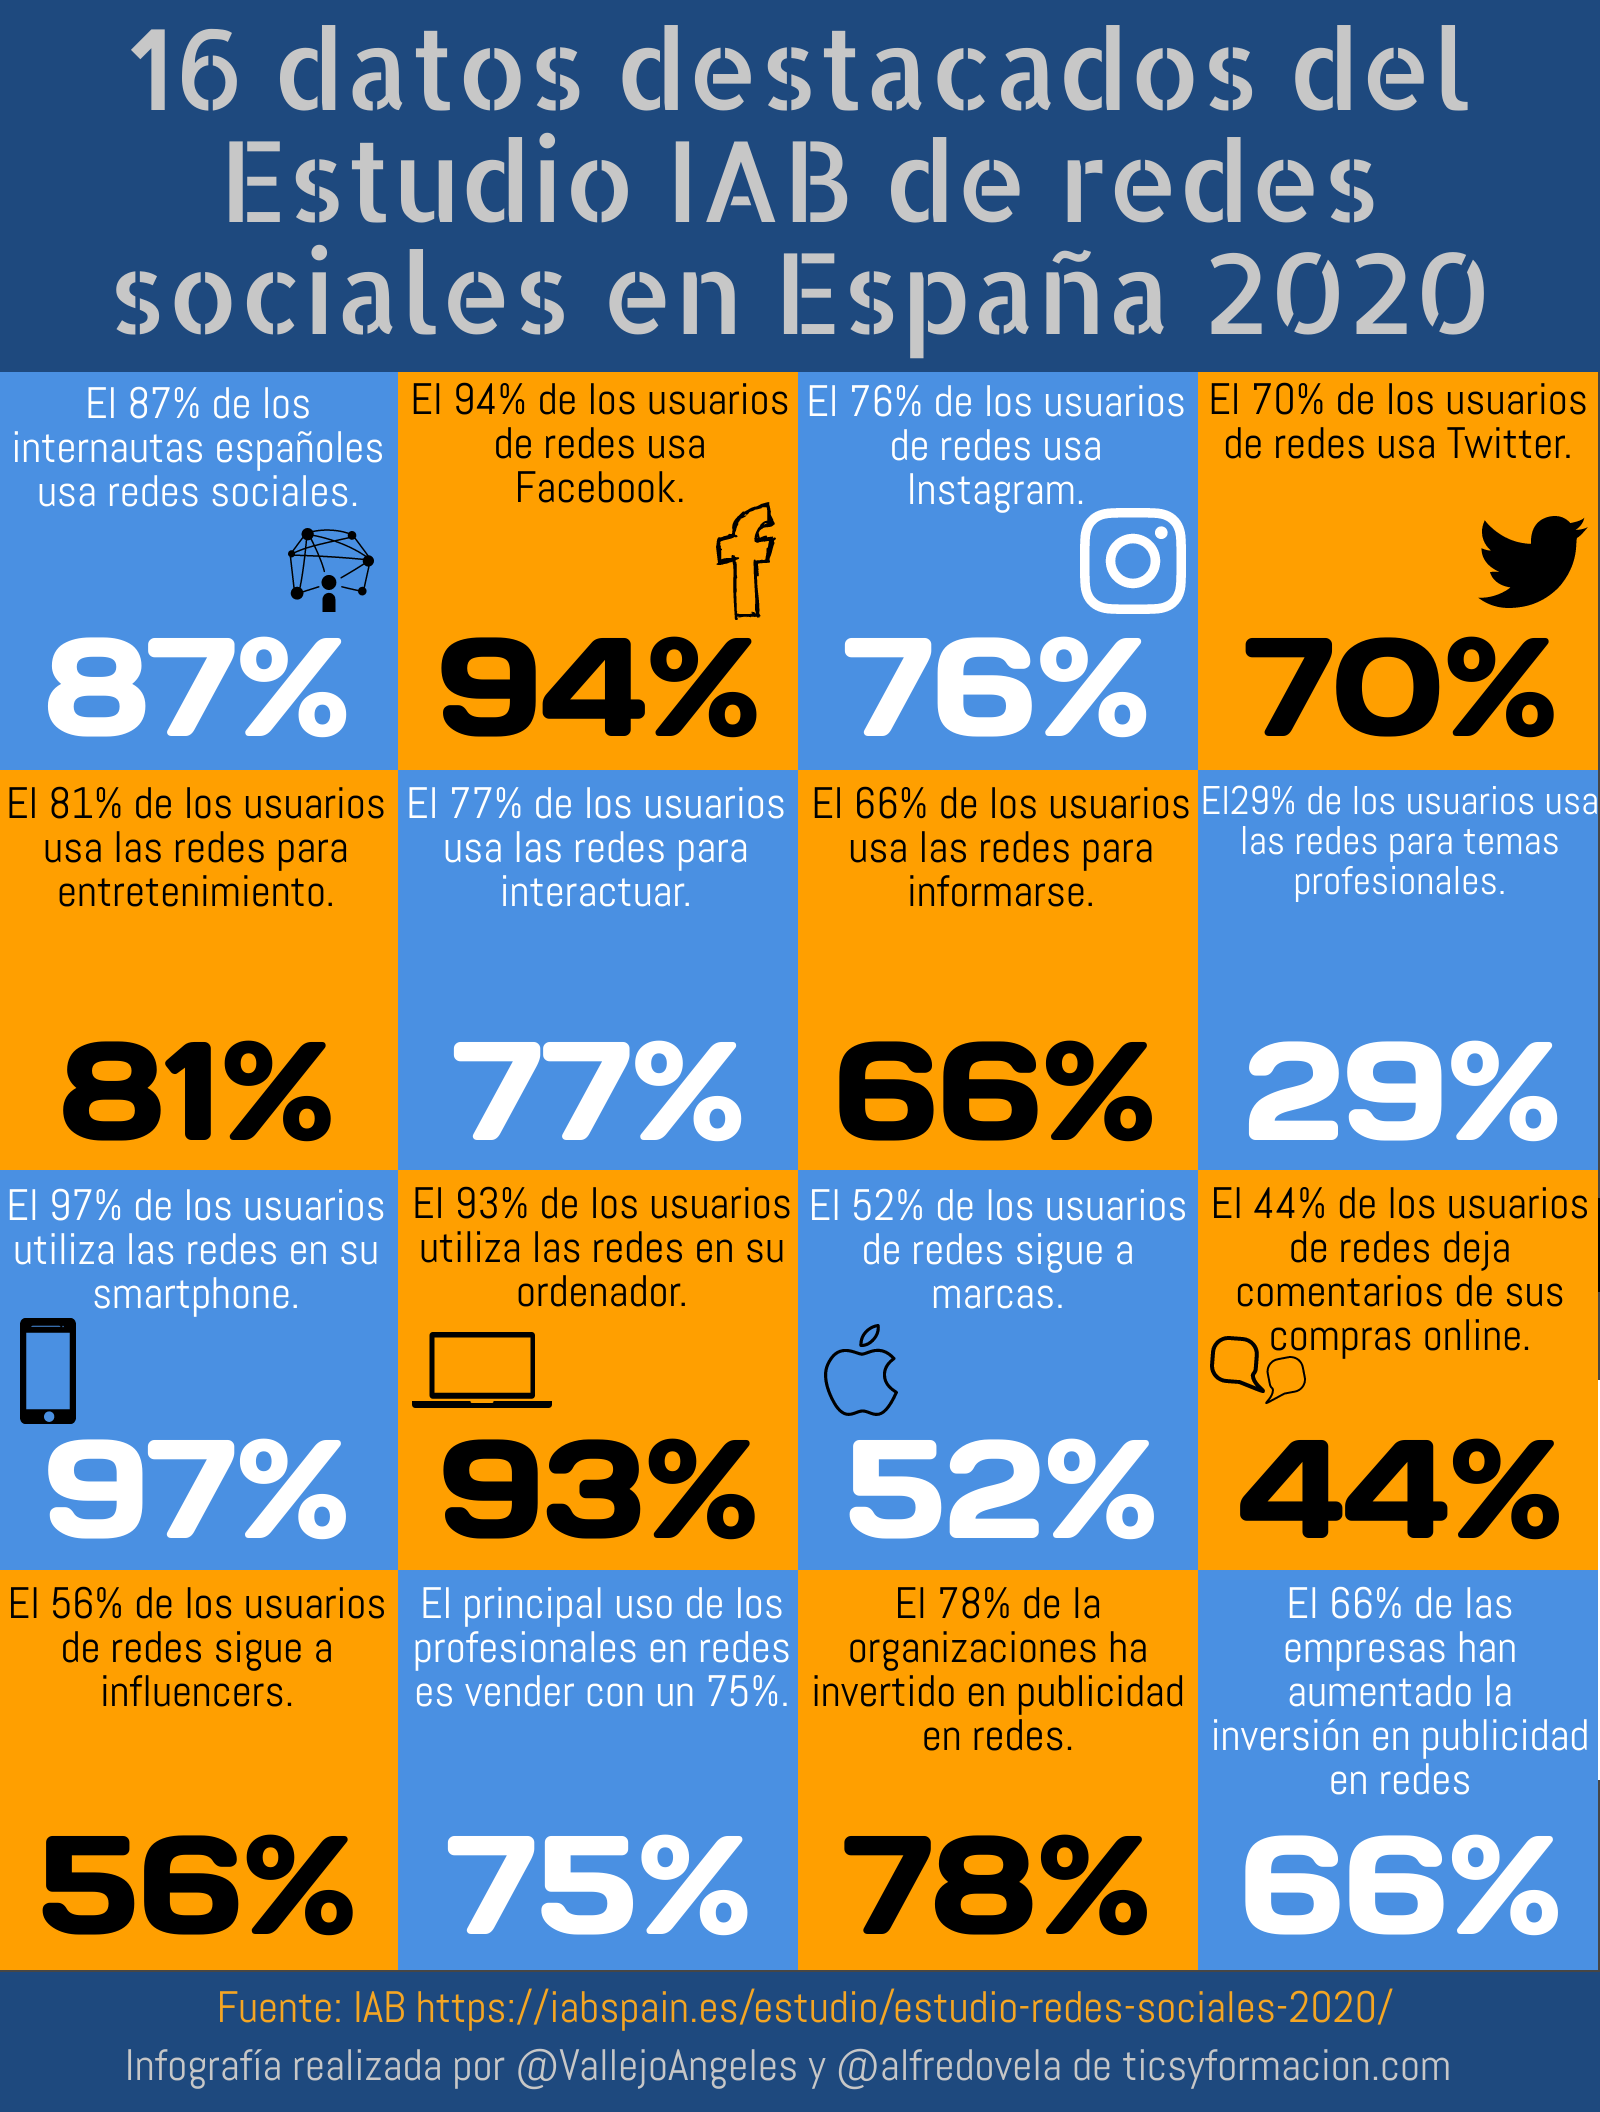 16 datos destacados del Estudio IAB de redes sociales en España 2020 #infografia #socialmedia